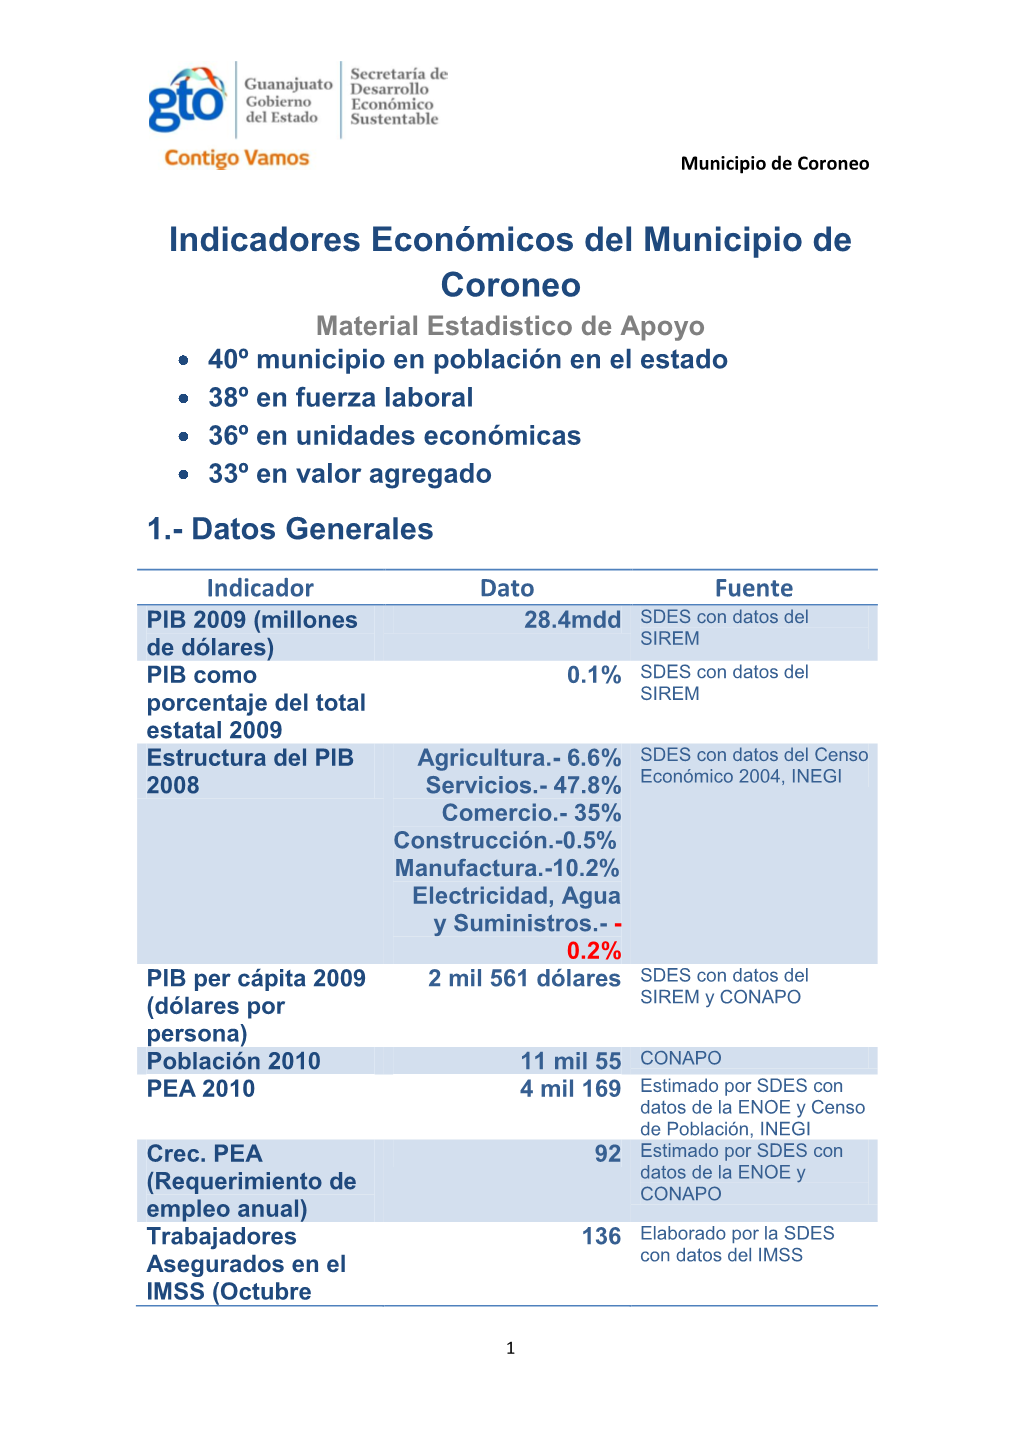 Indicadores Económicos Del Municipio De Coroneo